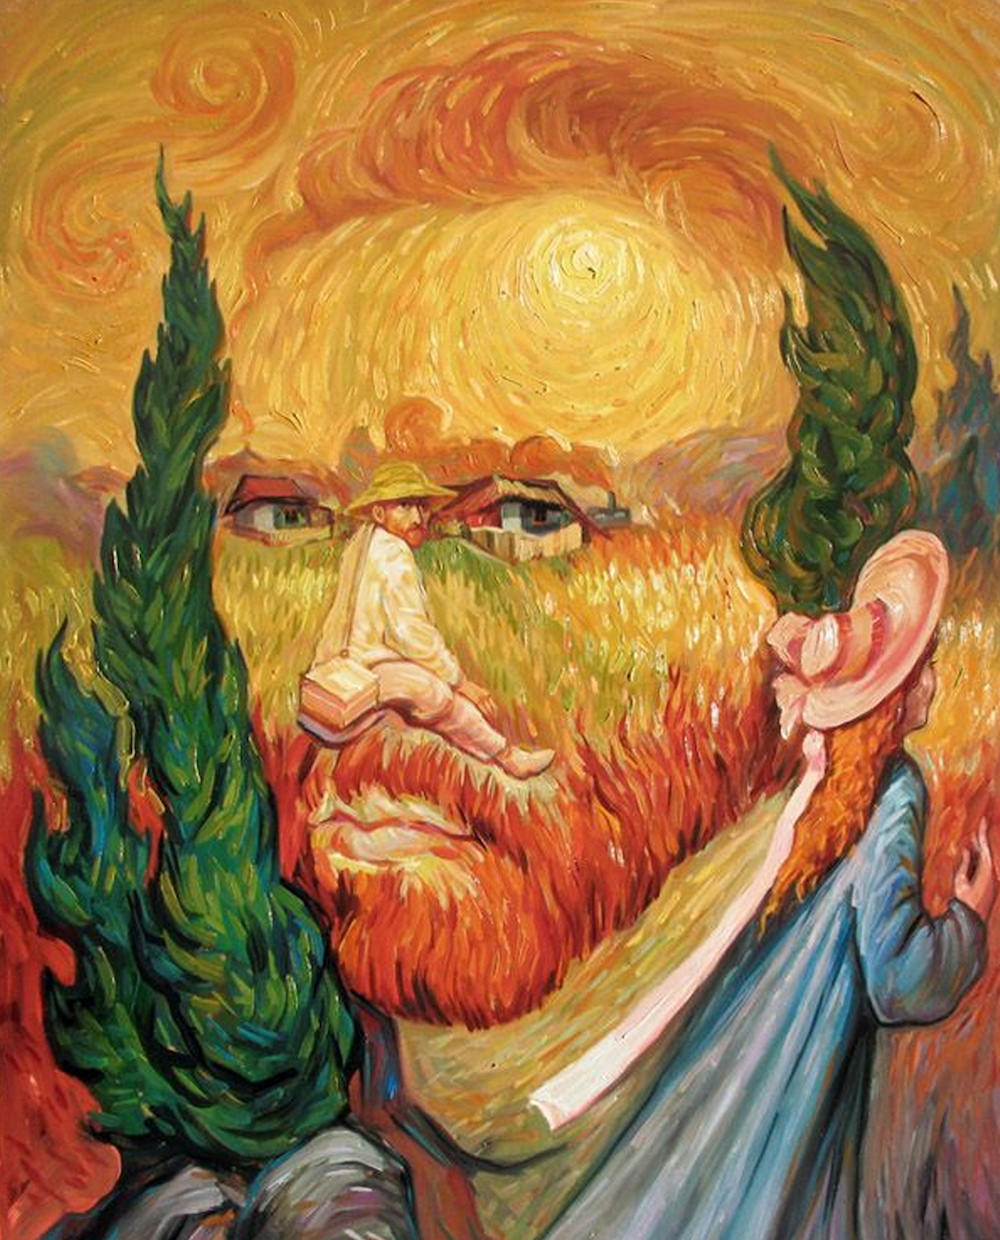 Dessin Illusion D optique Visage Oleg Shuplyak : le peintre roi des illusions d'optique qui cache des visages  dans les paysages